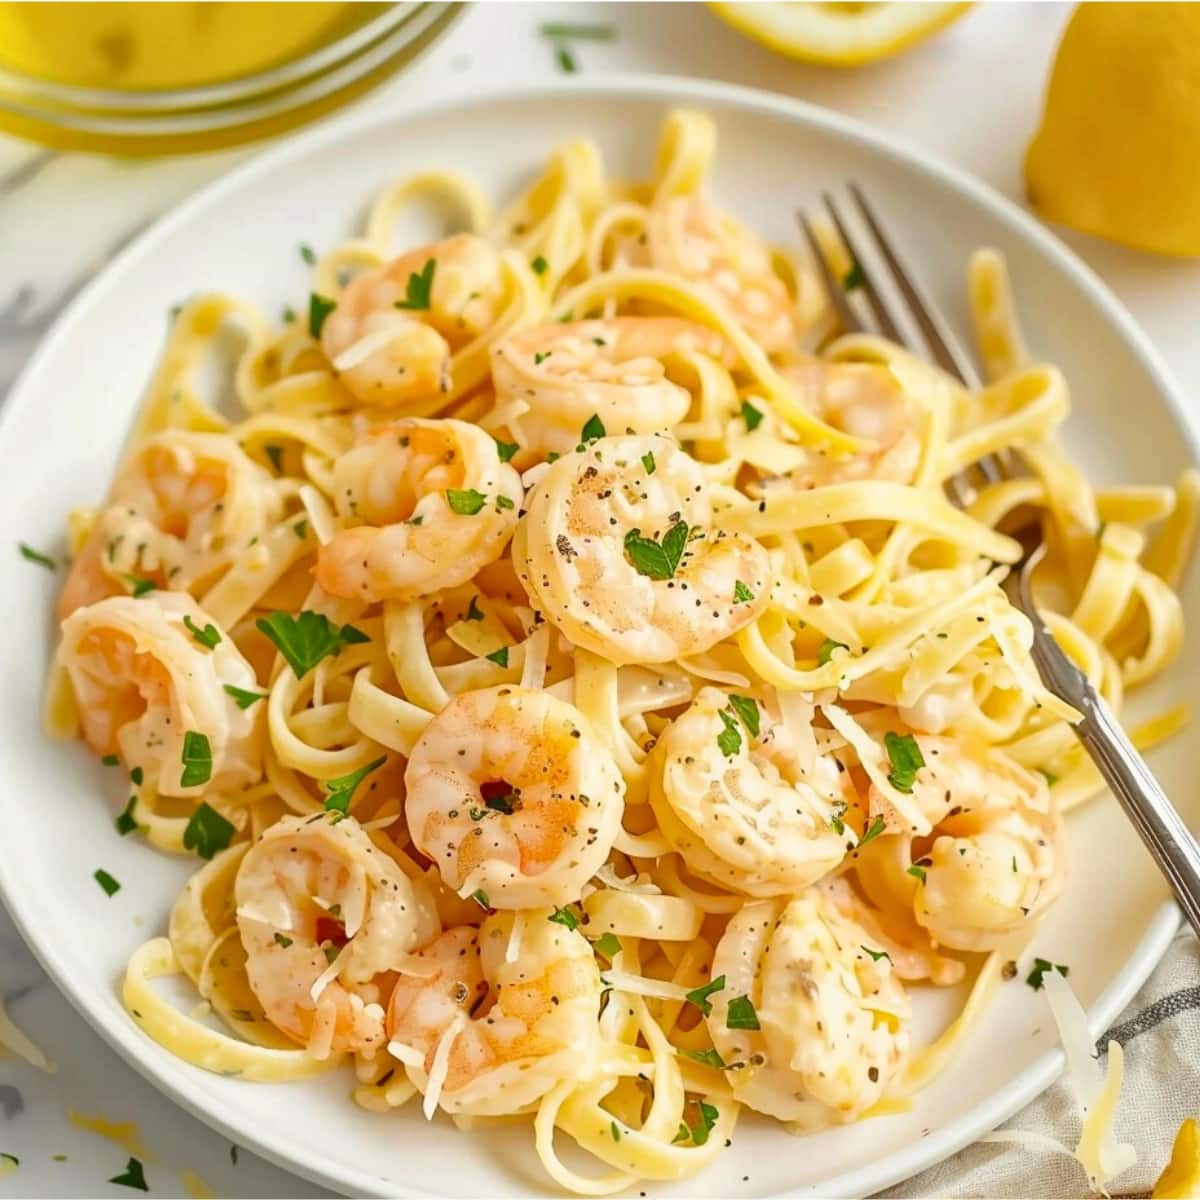 Lemon shrimp pasta served on a white plate.